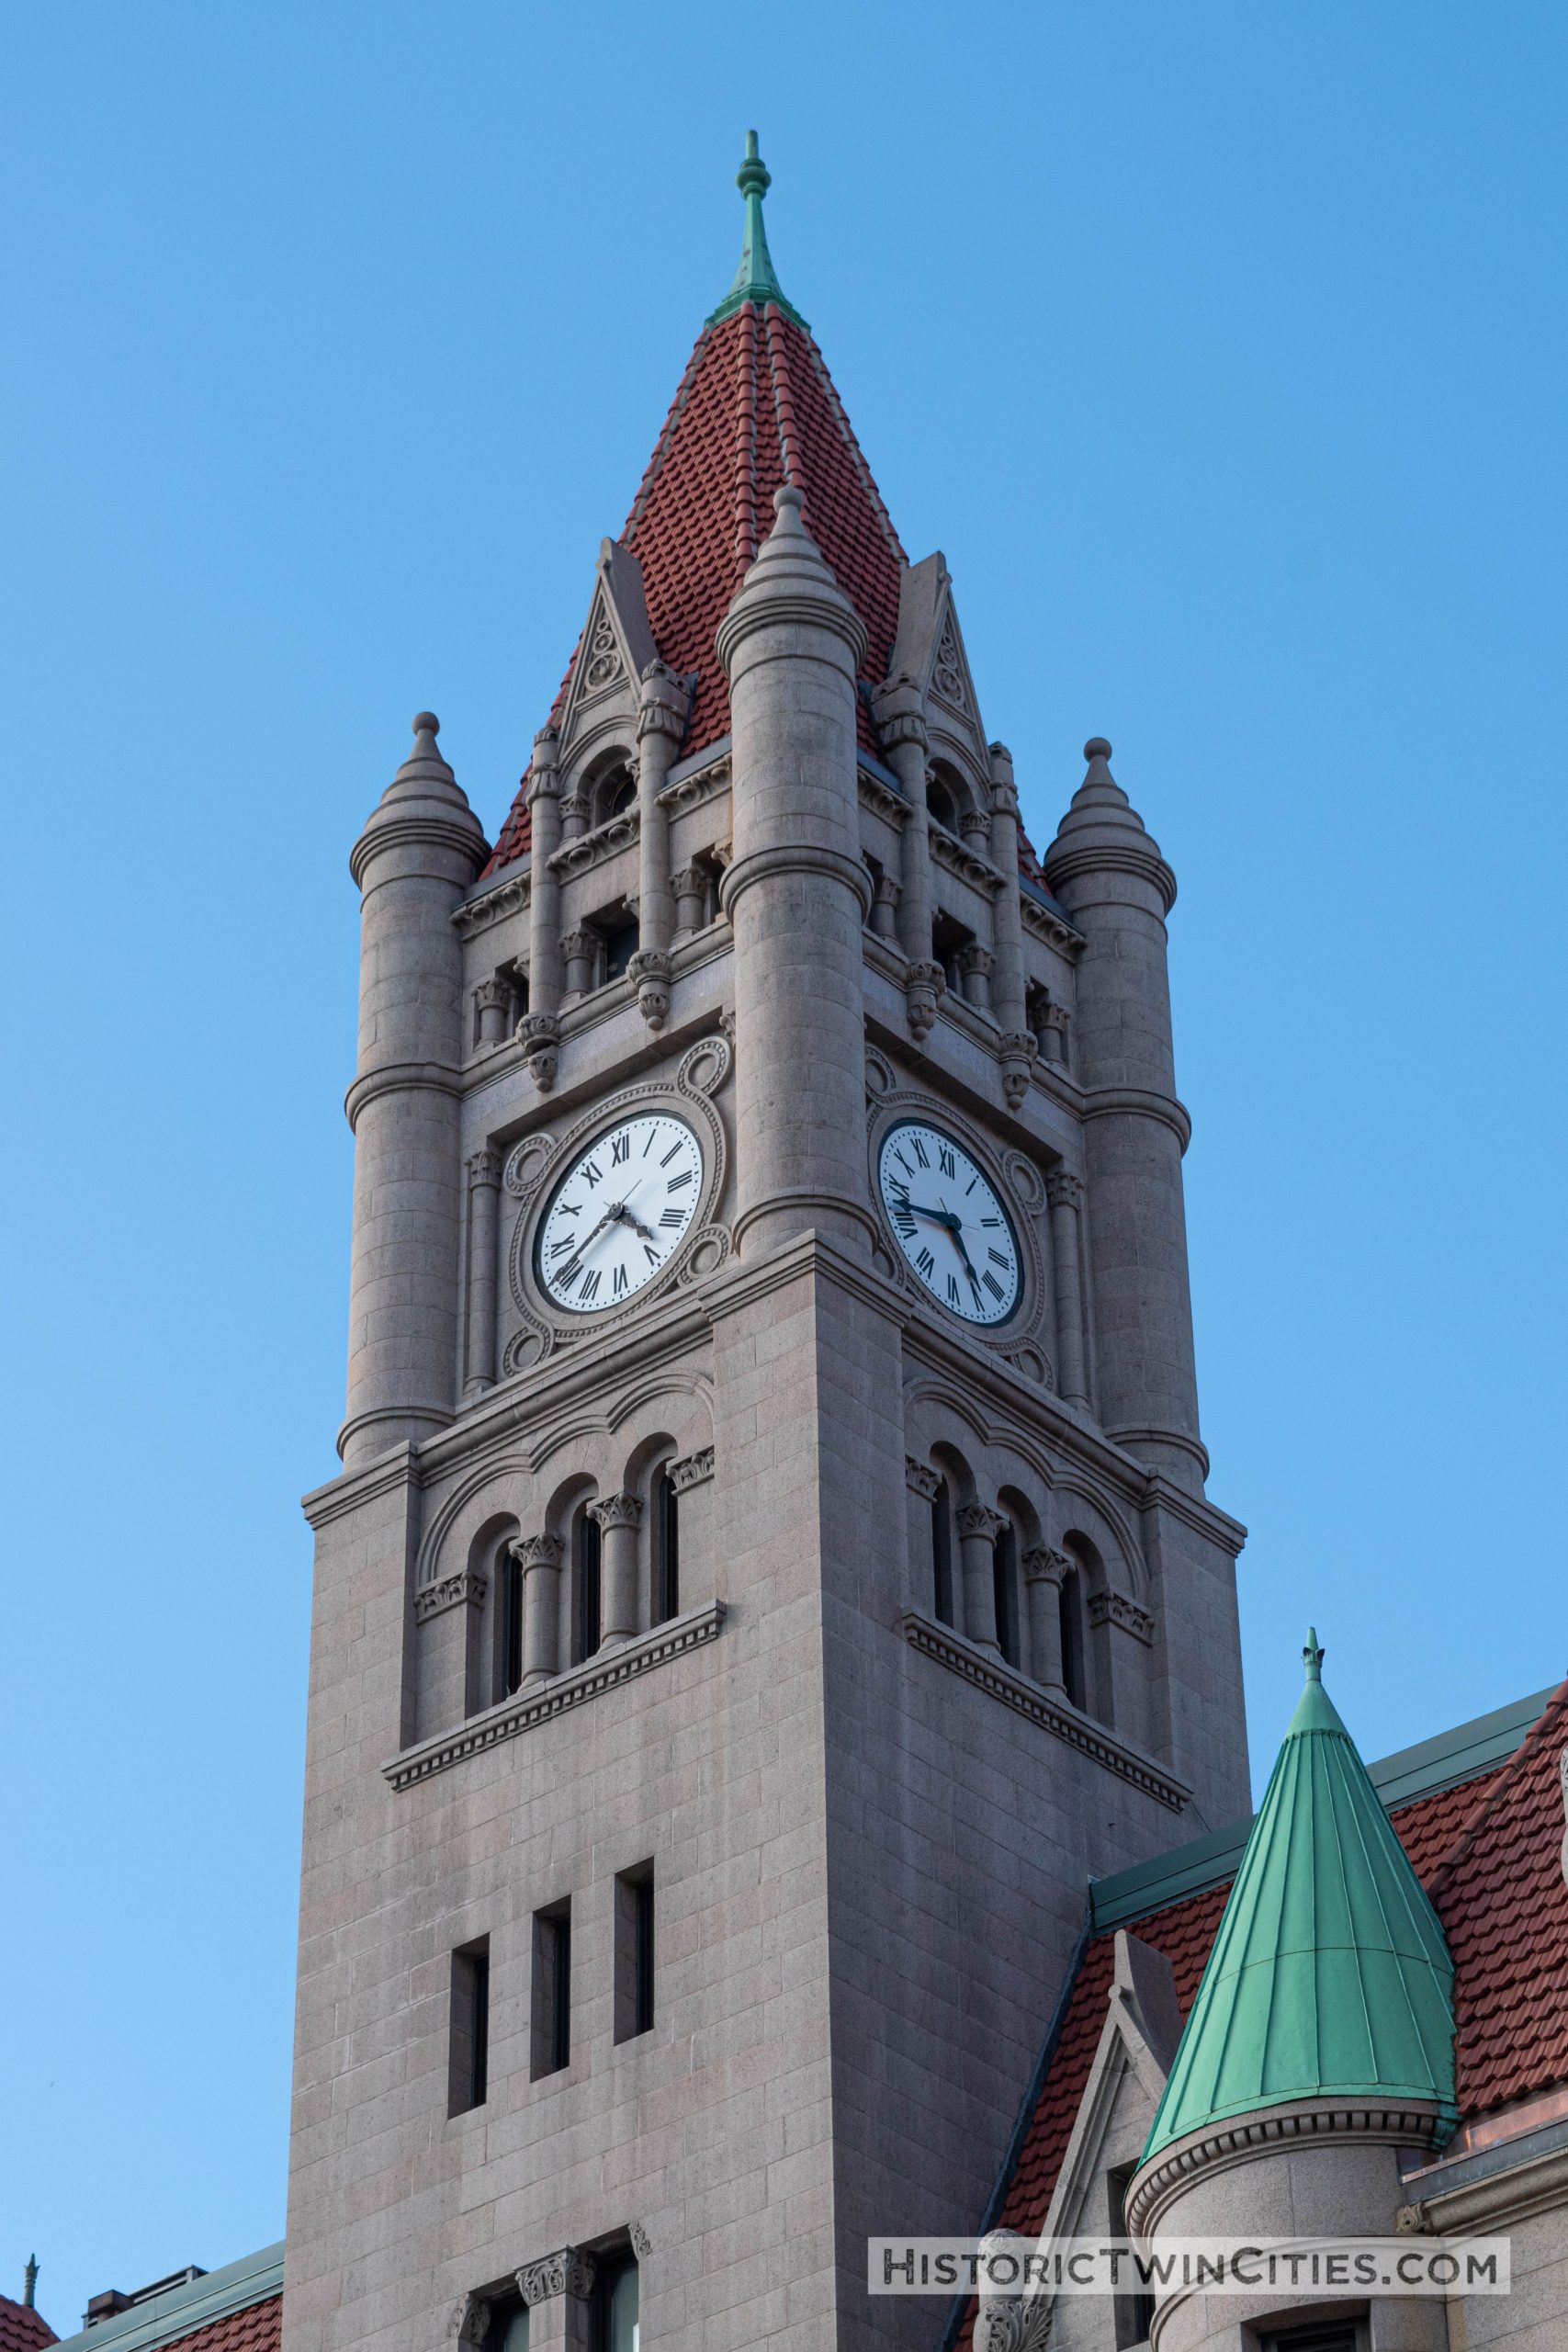 Clock tower of the Landmark Center in St. Paul, MN